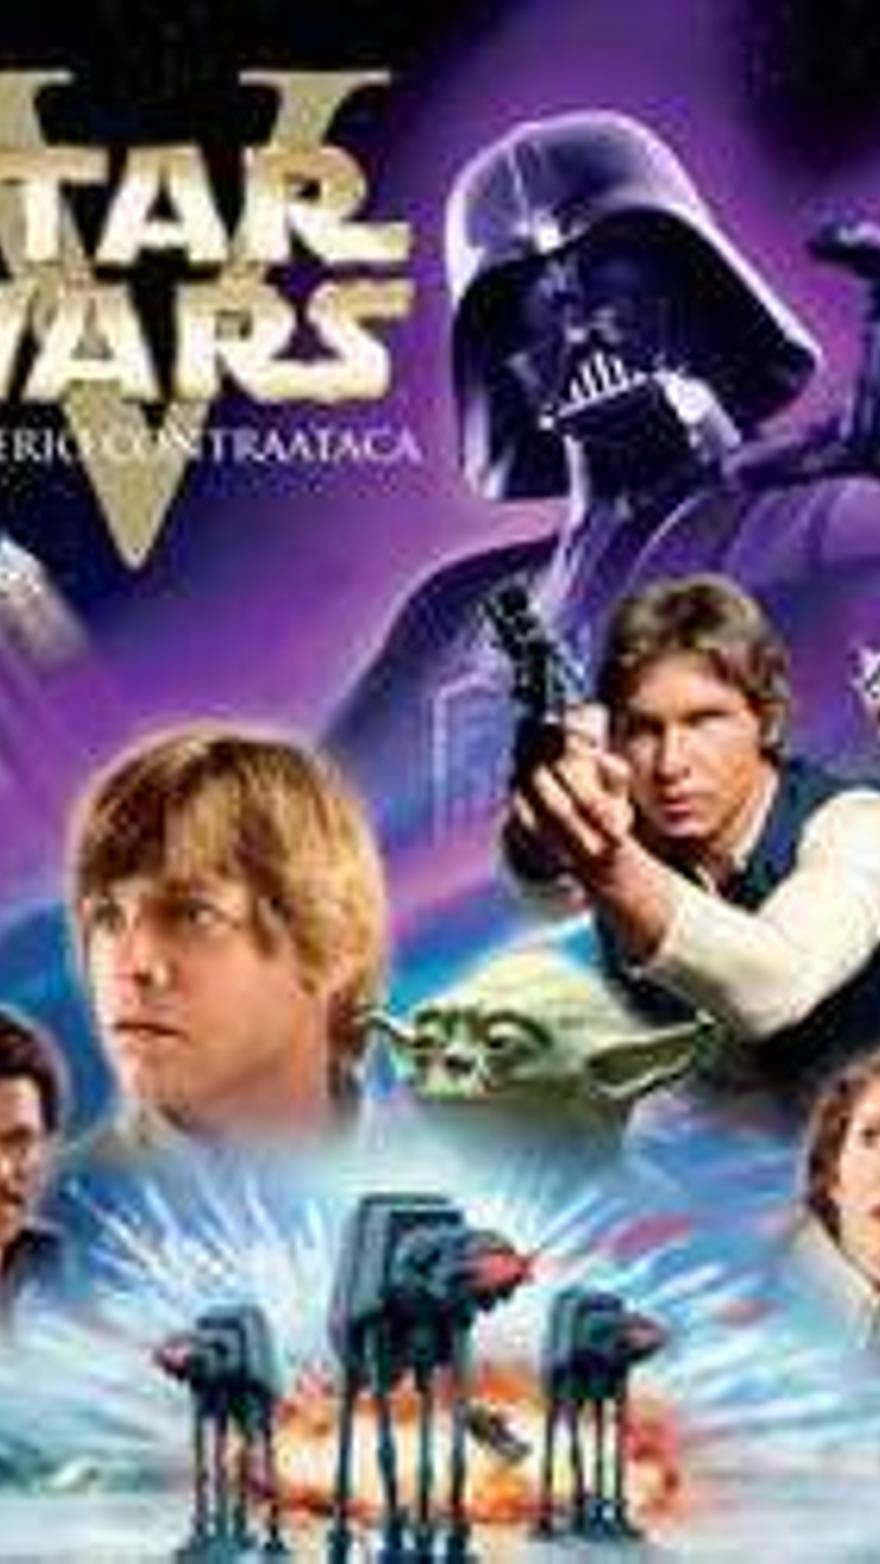 Star Wars: El imperio contraataca